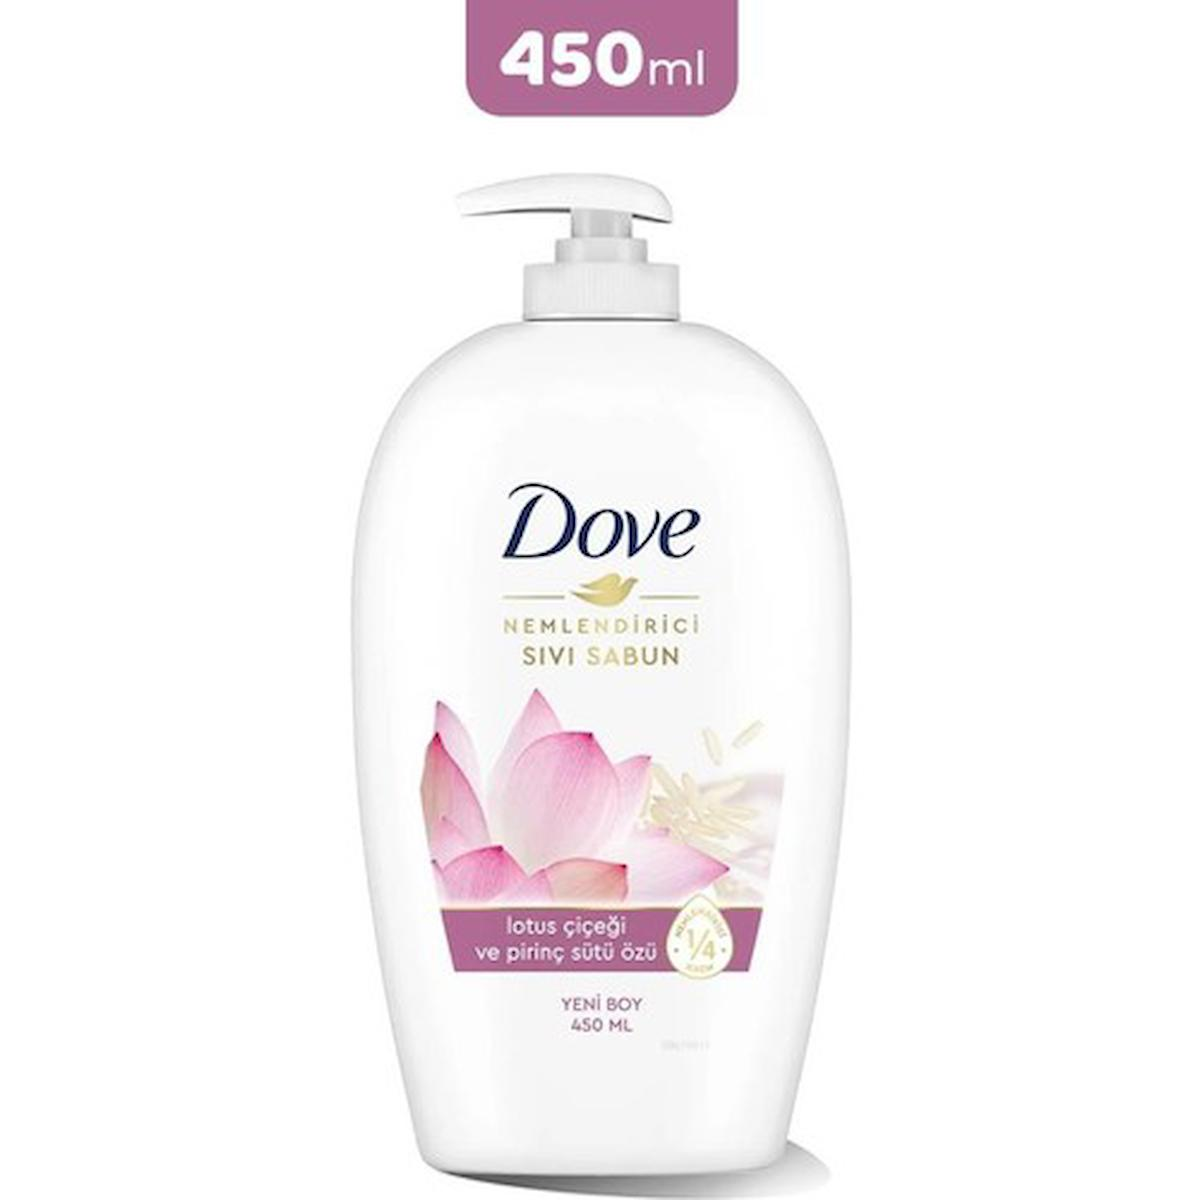 Dove Lotus Çiçeği Nemlendiricili Sıvı Sabun 450 ml Tekli